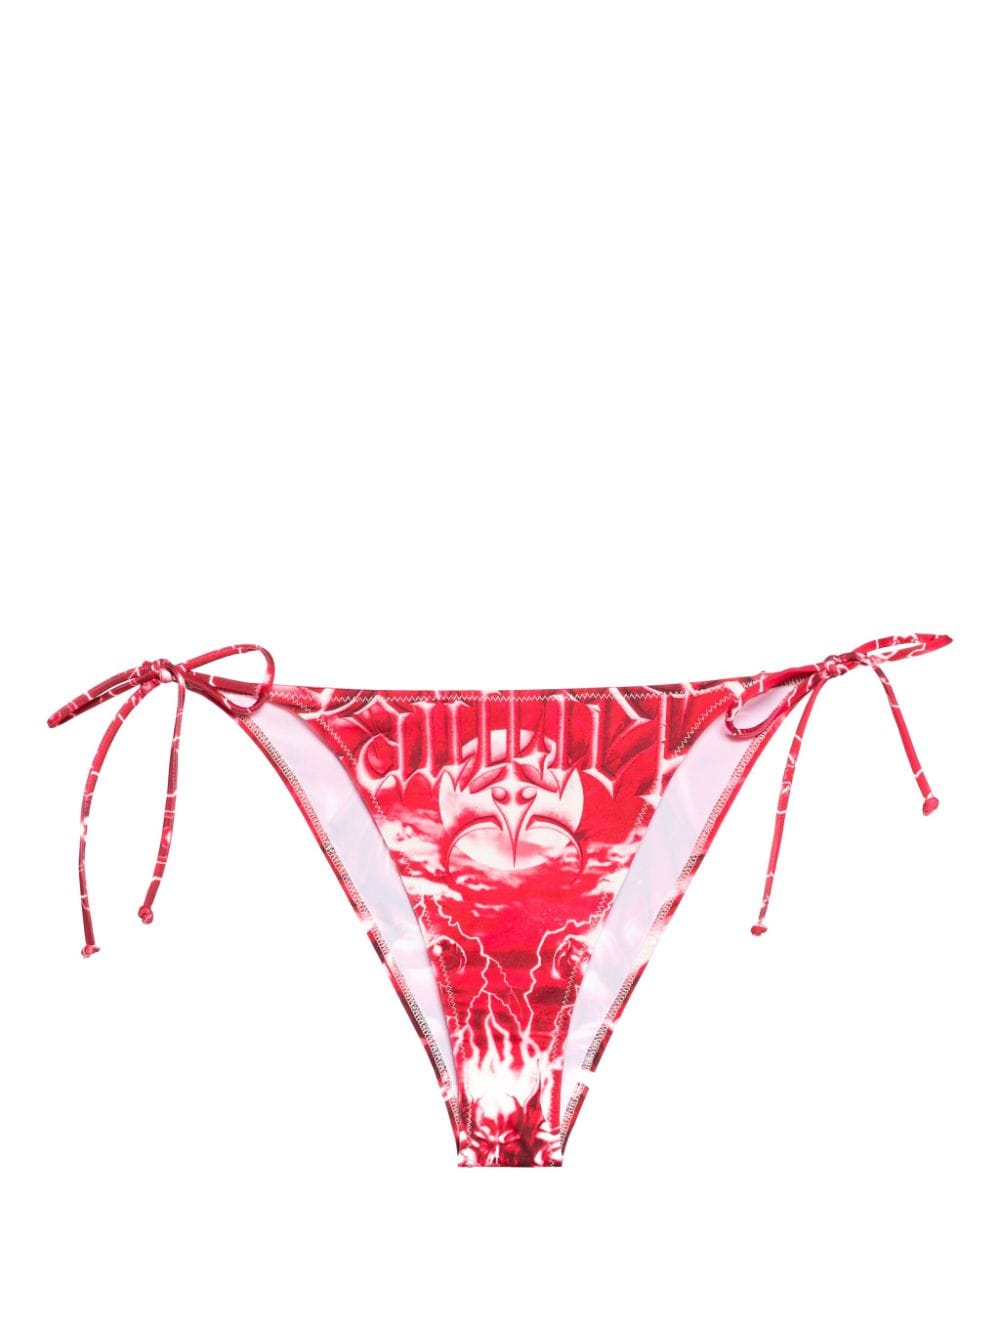 Jean Paul Gaultier Diablo bikini bottoms - Red von Jean Paul Gaultier